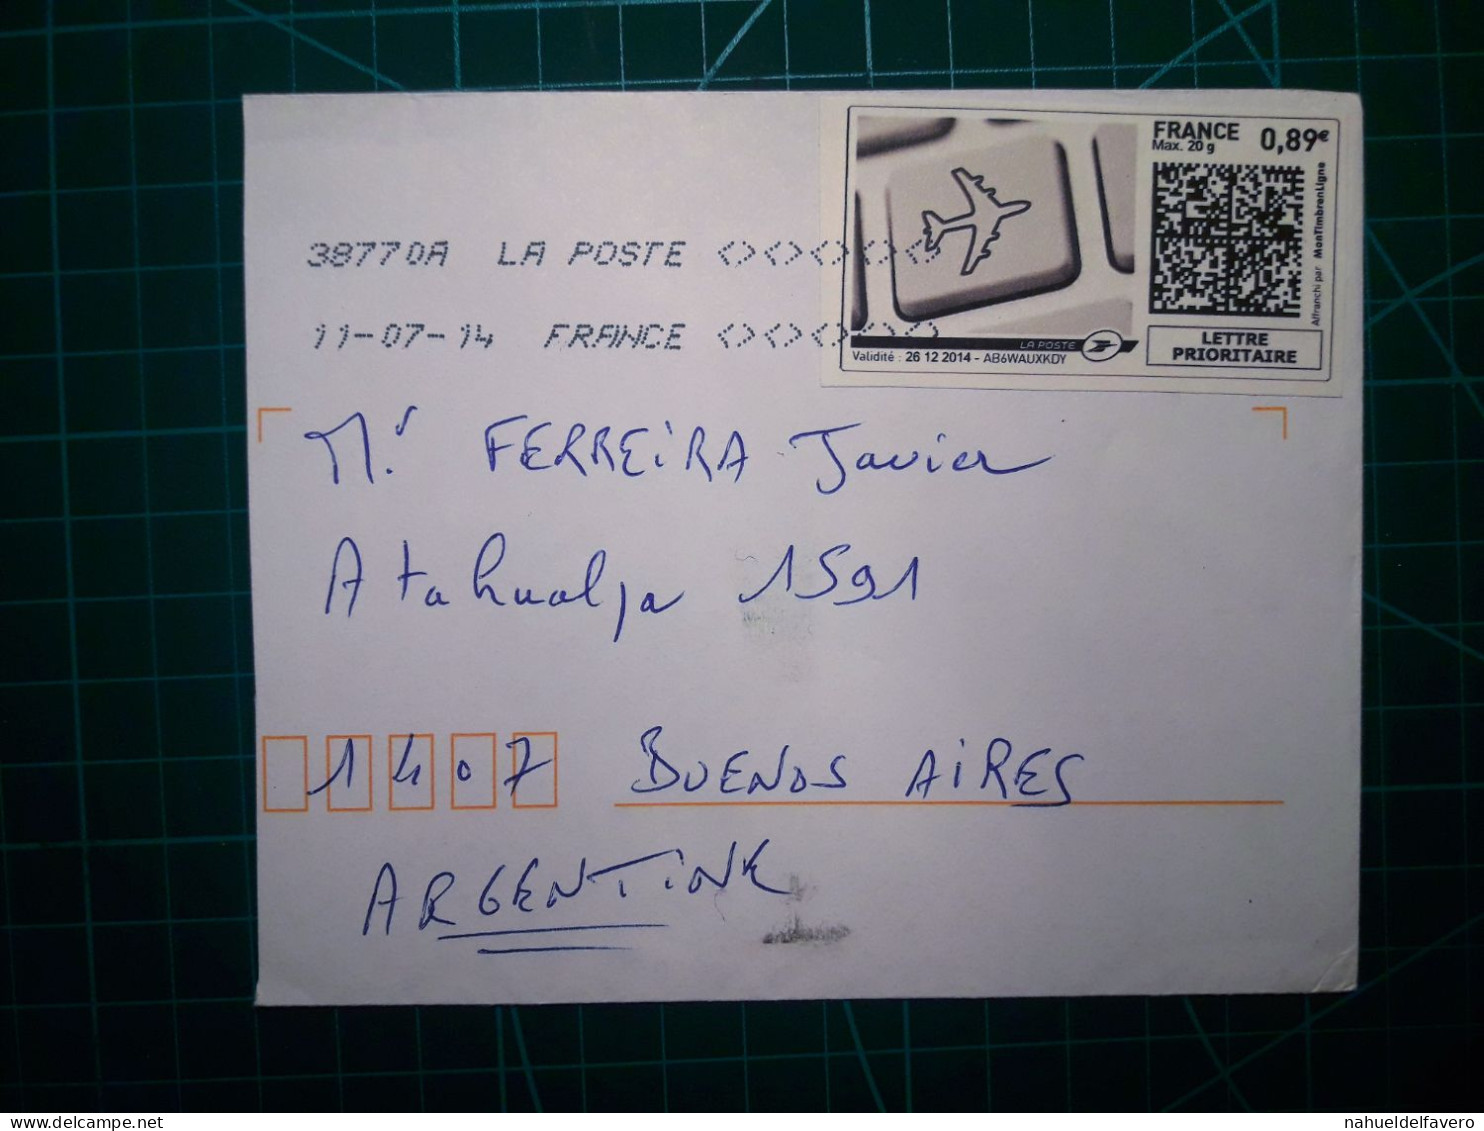 FRANCE, Enveloppe Envoyée à Buenos Aires, Argentine Avec Cachet Numérique Et Code QR. Année 2007. - Oblitérés